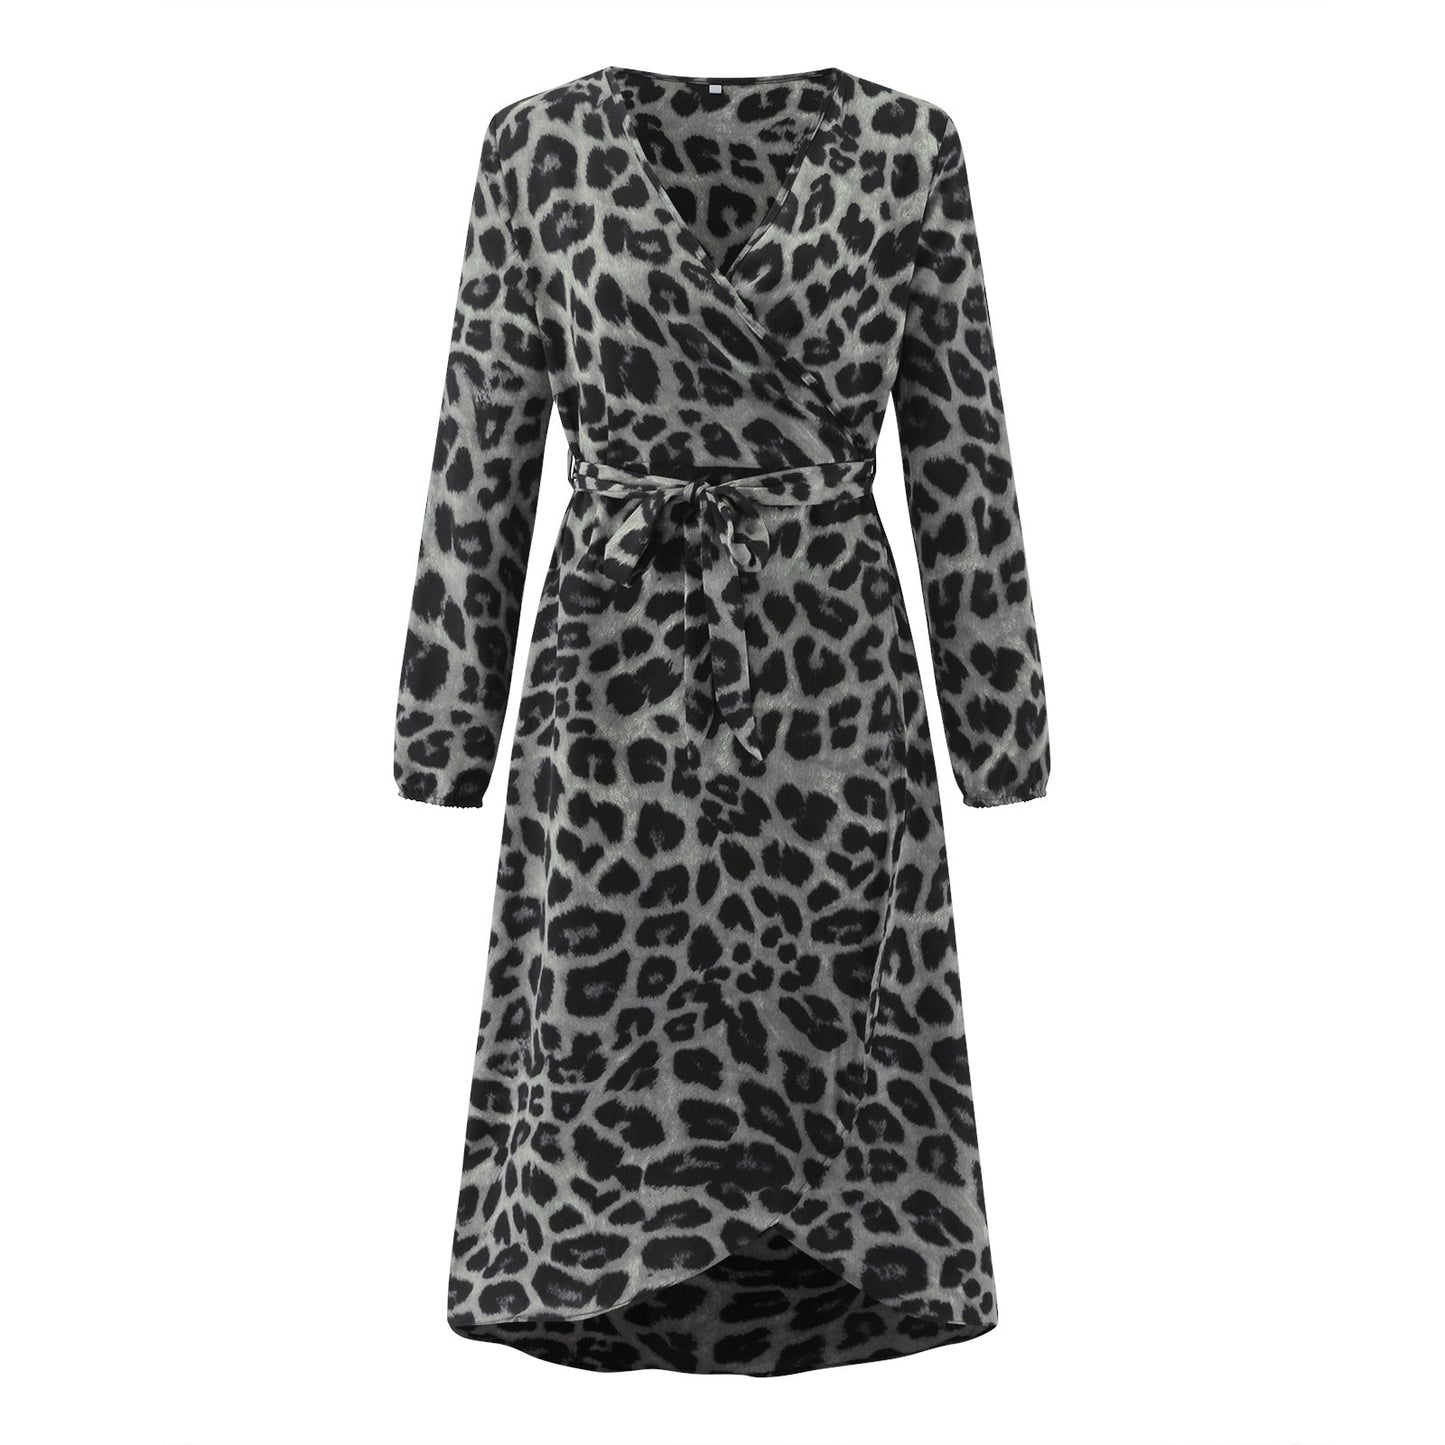 leopard dress plus size